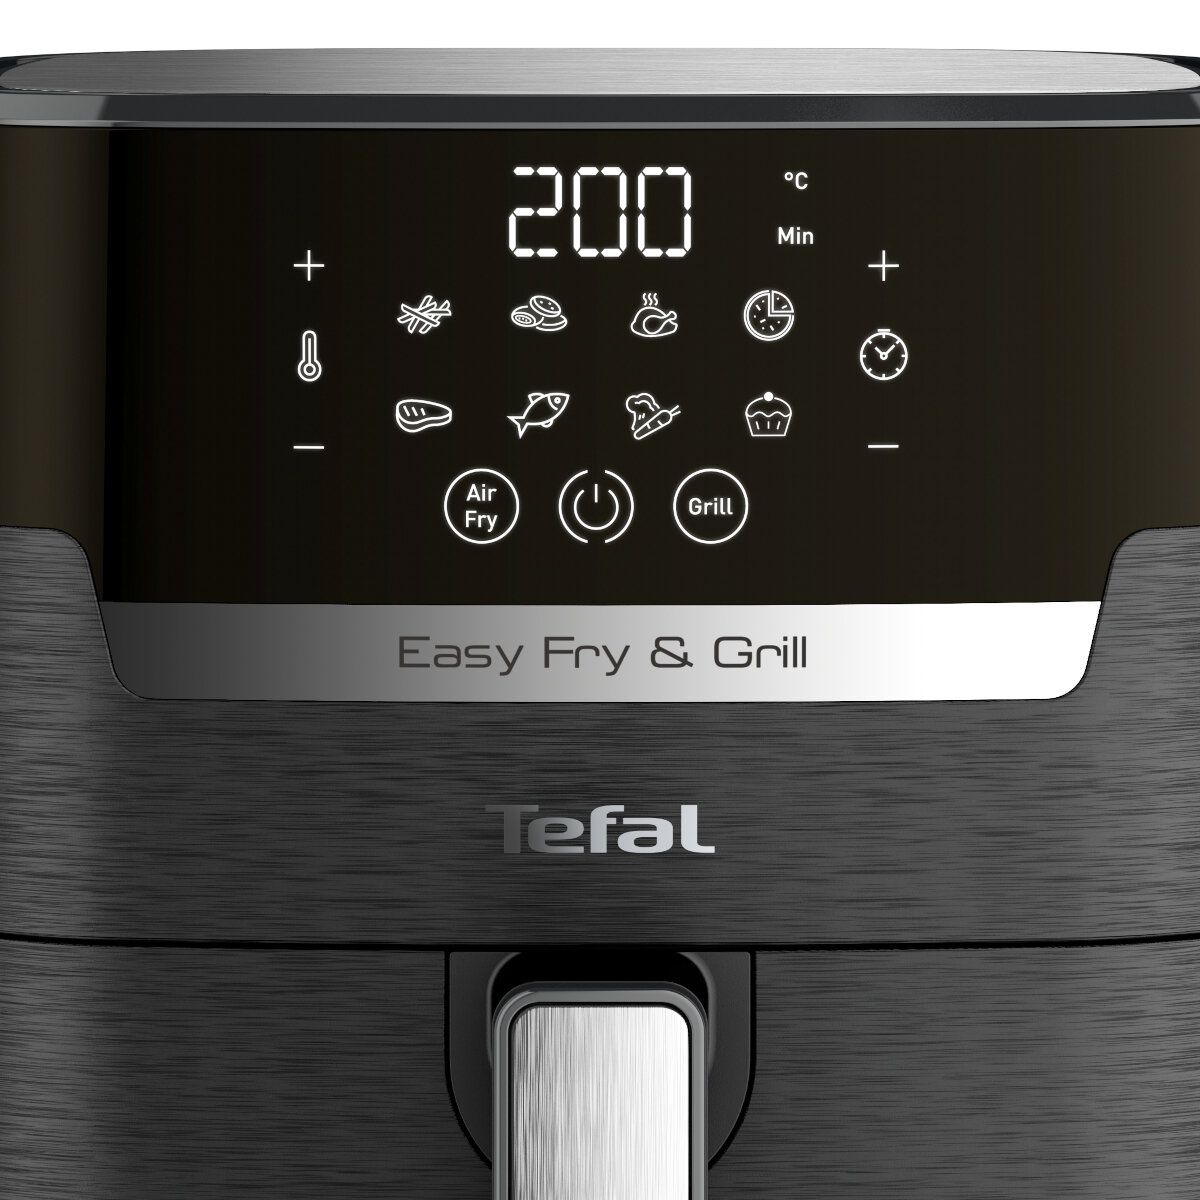 Frytownica Tefal Easy Fry & Grill Precision EY505 4.2 L widok na wyświetlacz frytownicy